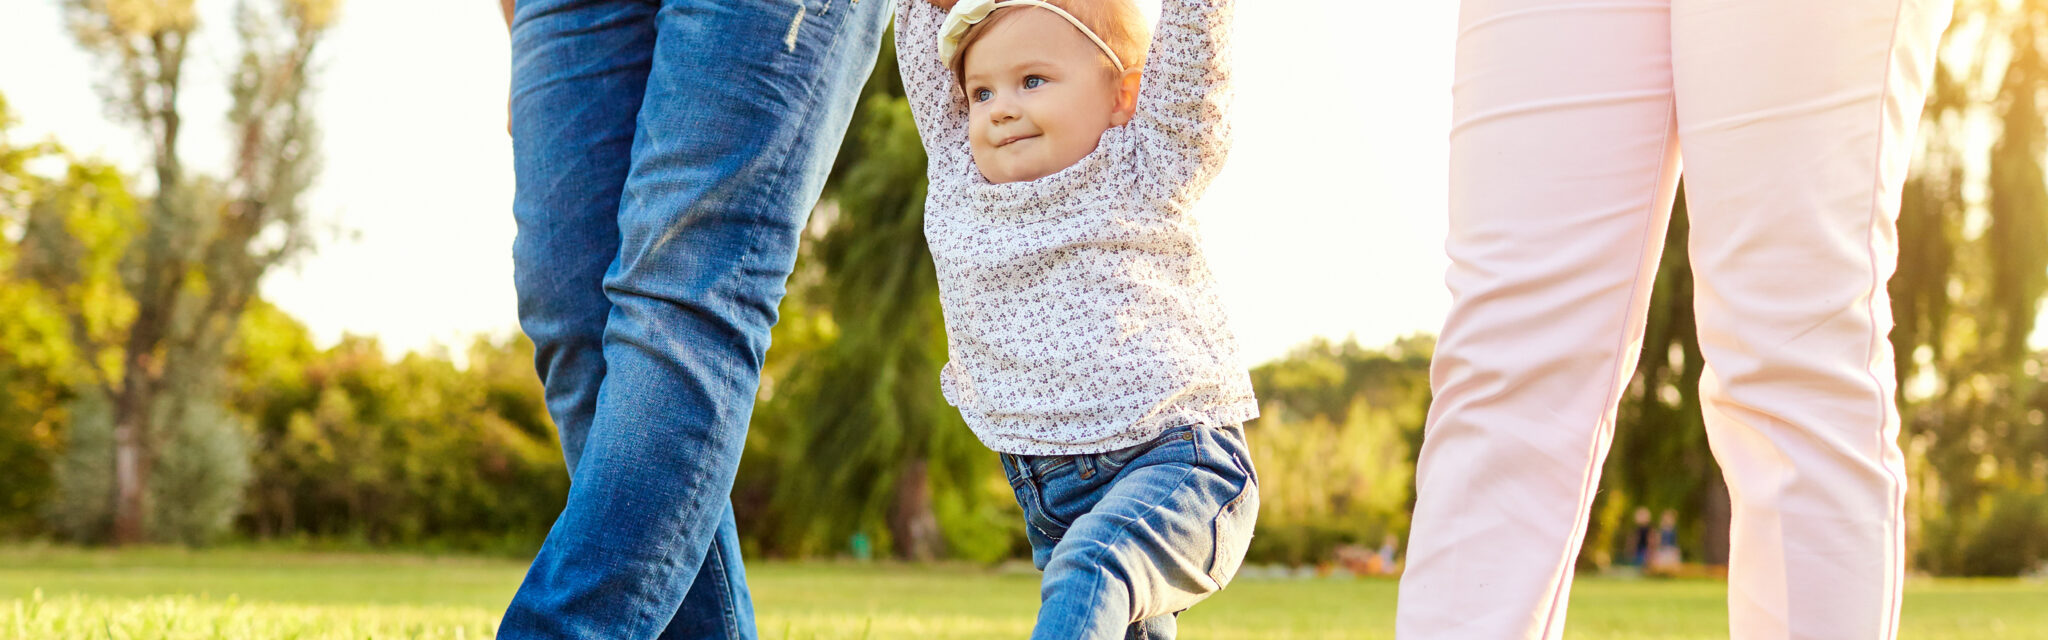 Les premiers pas du bébé. Les parents apprennent à leur enfant à marcher. Une famille heureuse.